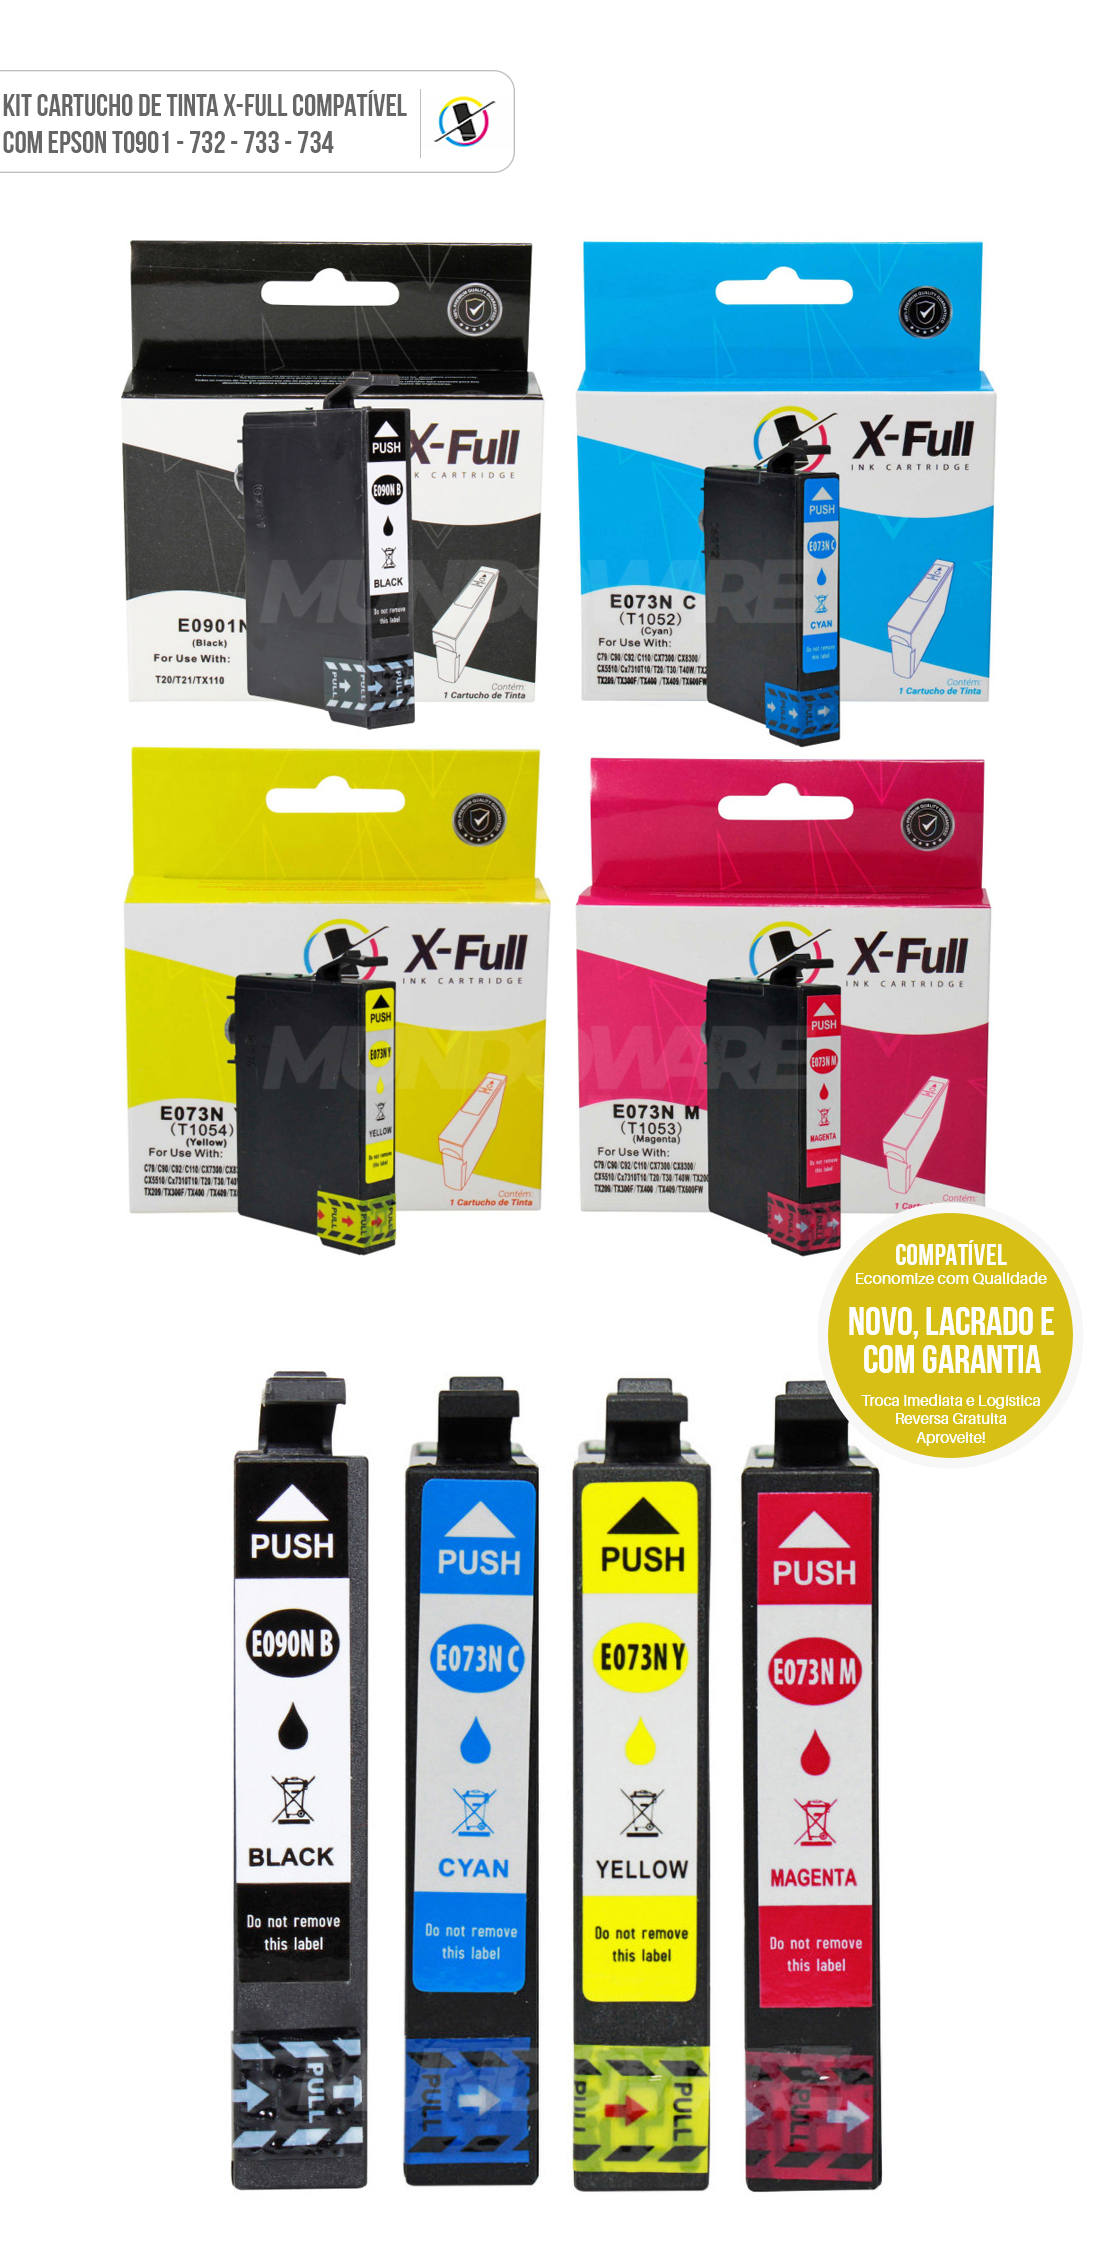 Kit 4 Cores Cartucho de Tinta X-Full Compatível com Epson 901 732 733 734 p/ Impressora CX5600 C92 T20 T21 TX100 TX110